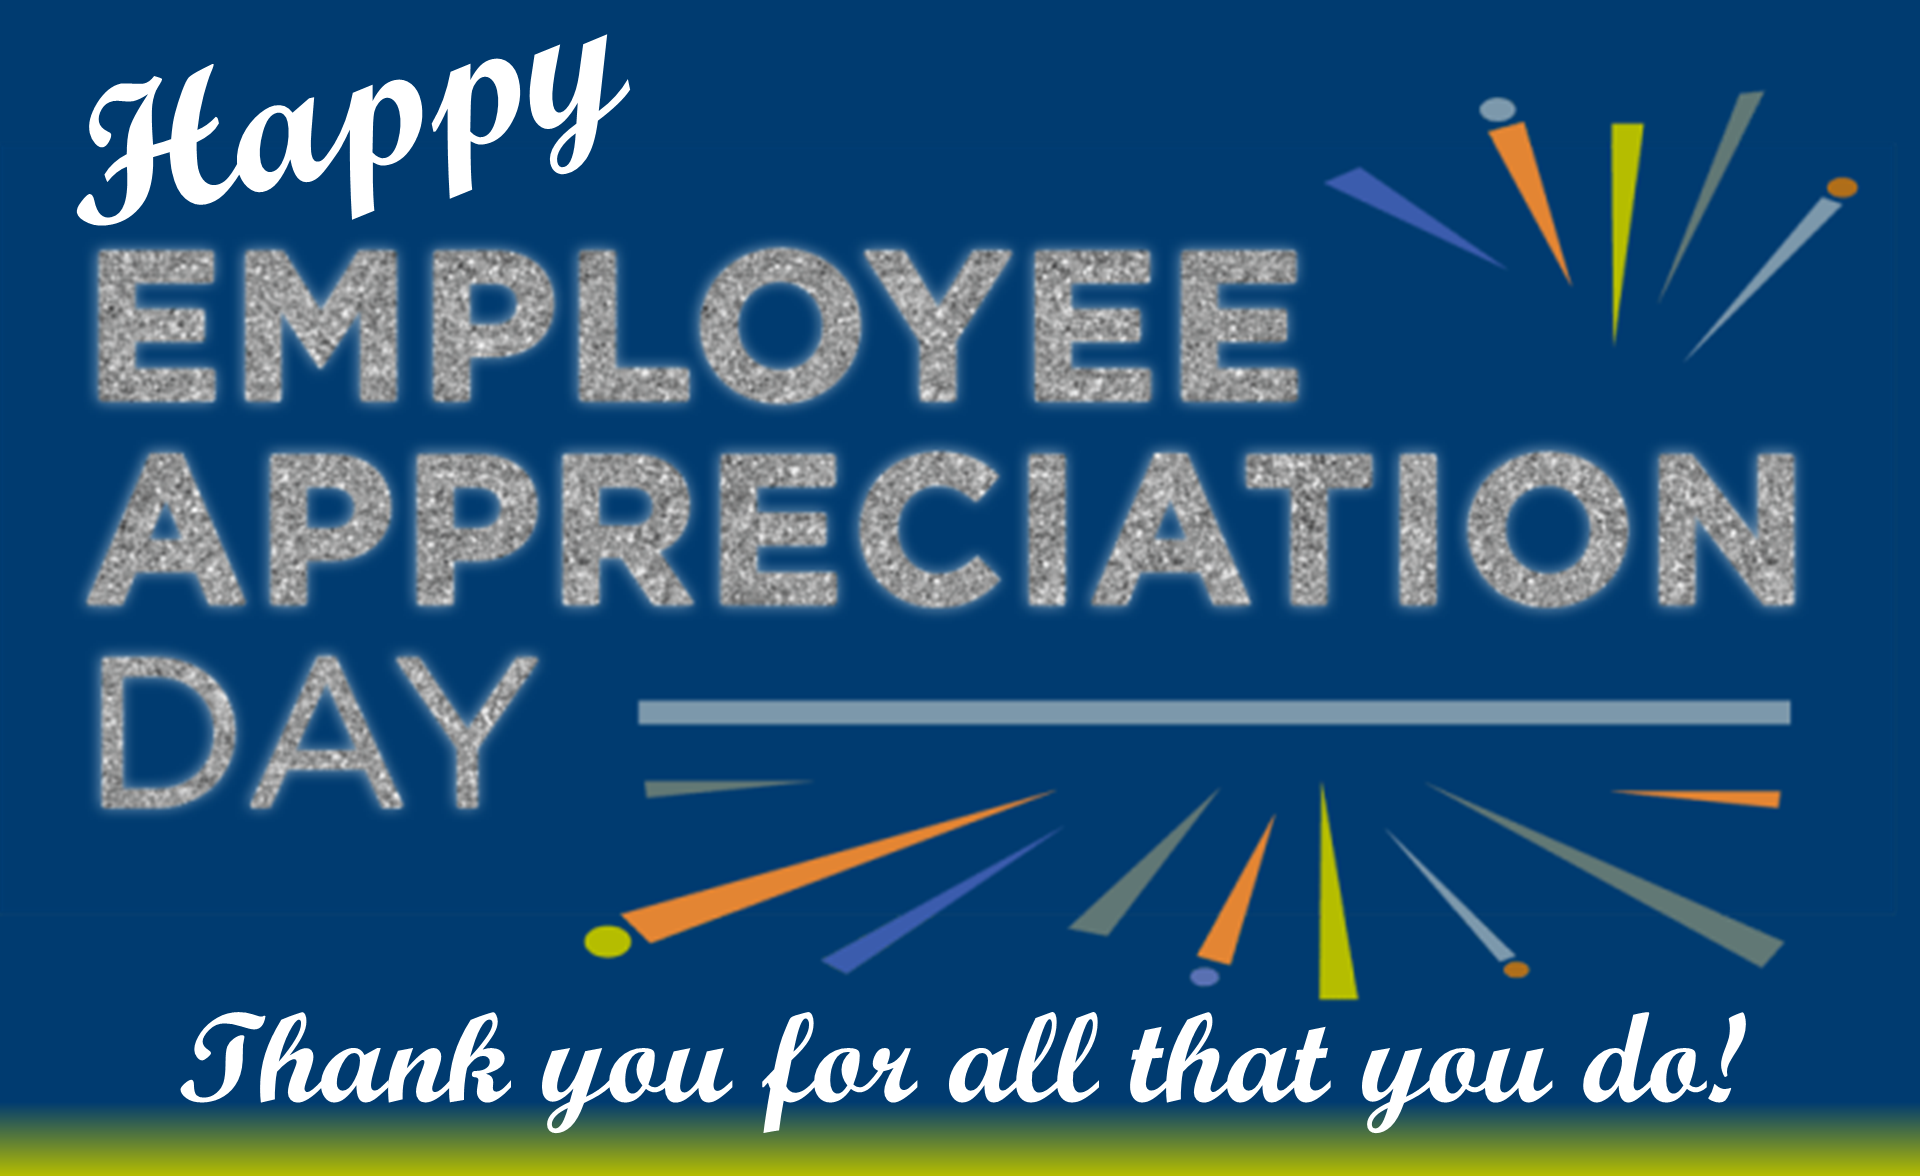 Happy Employee Appreciation Day - March 4, 2023